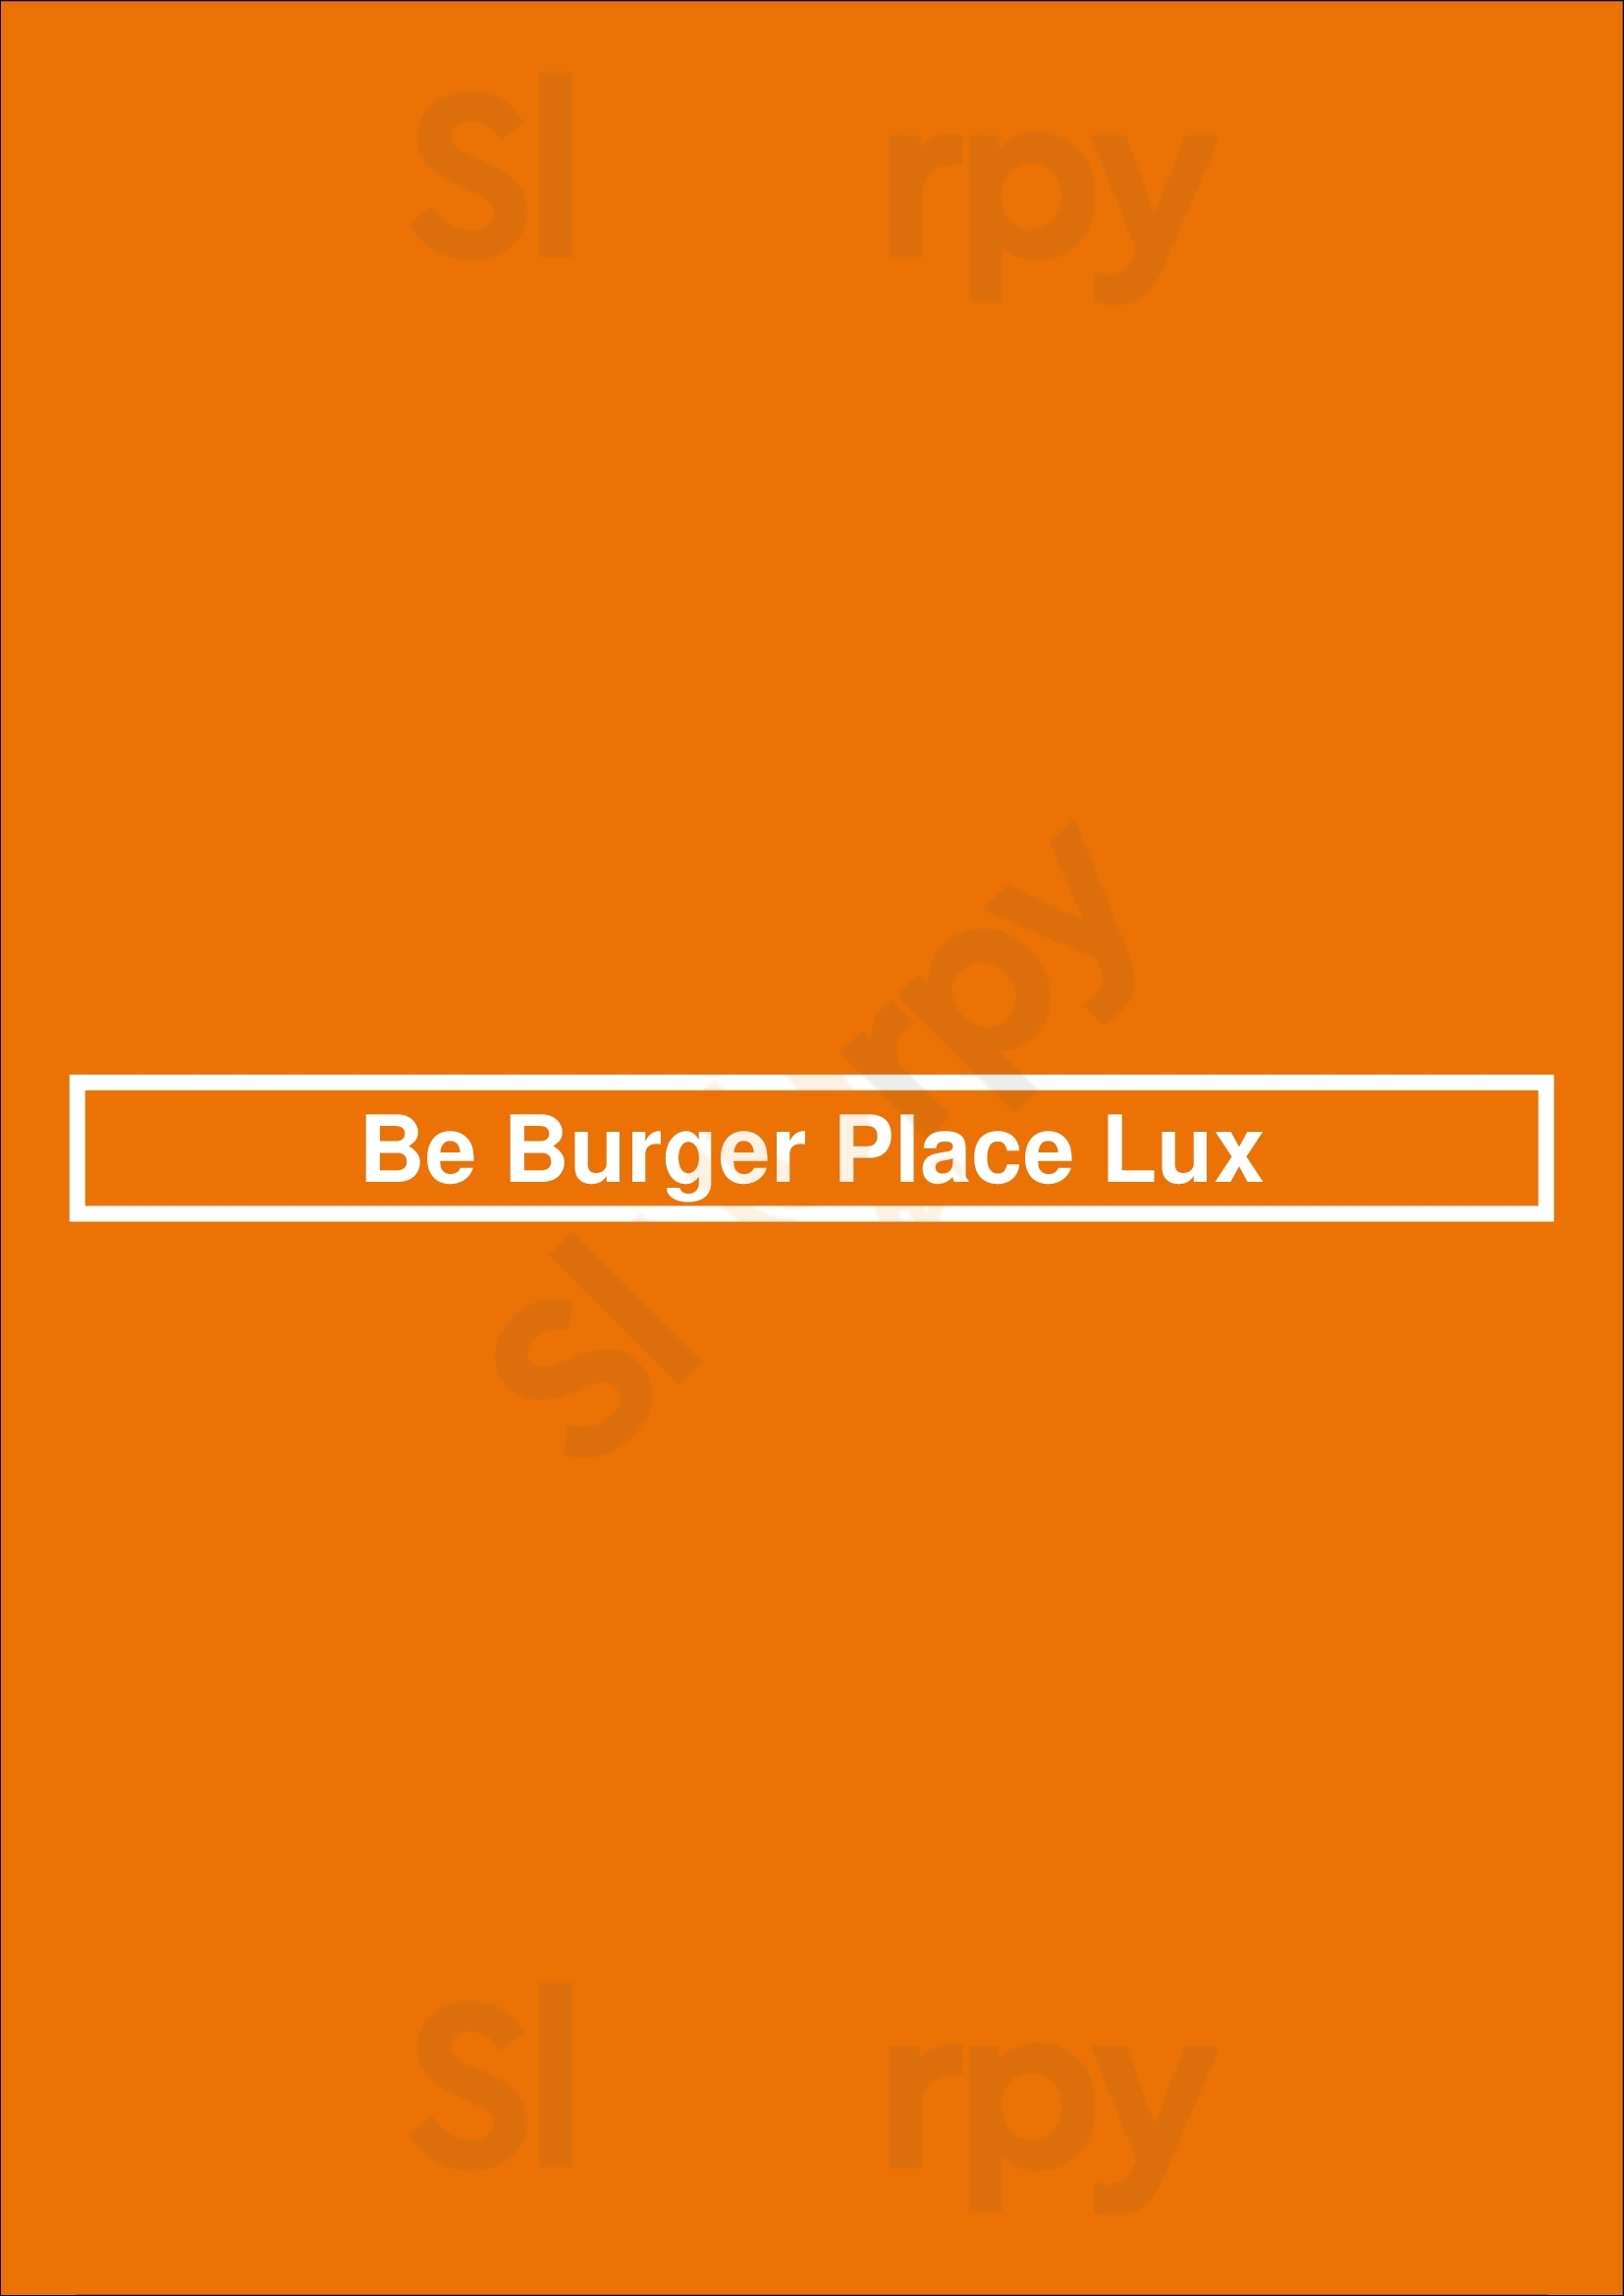 Be Burger Place Du Luxembourg Ixelles Menu - 1